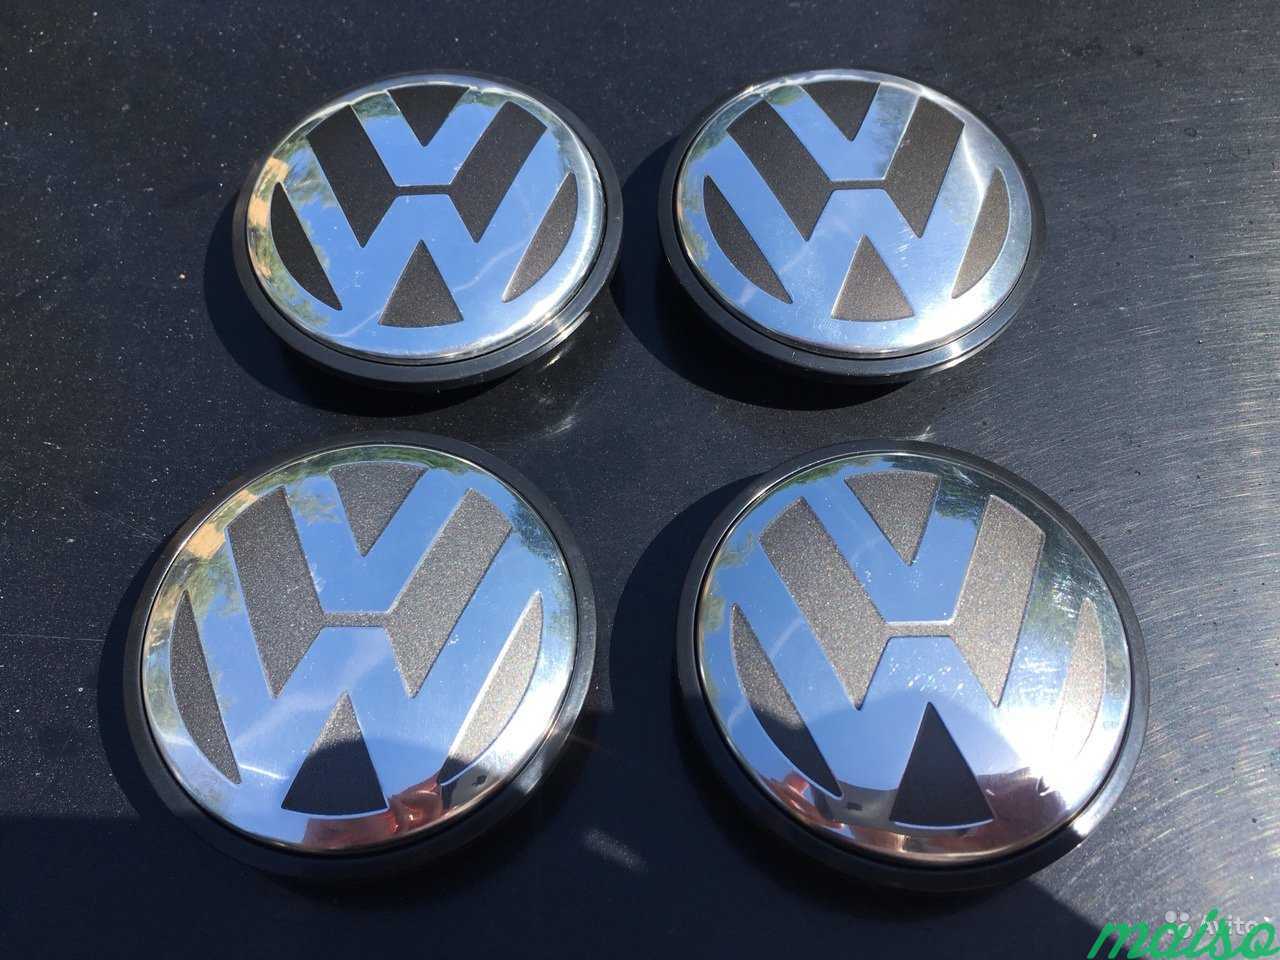 Номер колпака. Заглушка Фольксваген. Колпачок диска Фольксваген 76 мм. Заглушки на диск Volkswagen. Заглушки на диски Фольксваген.